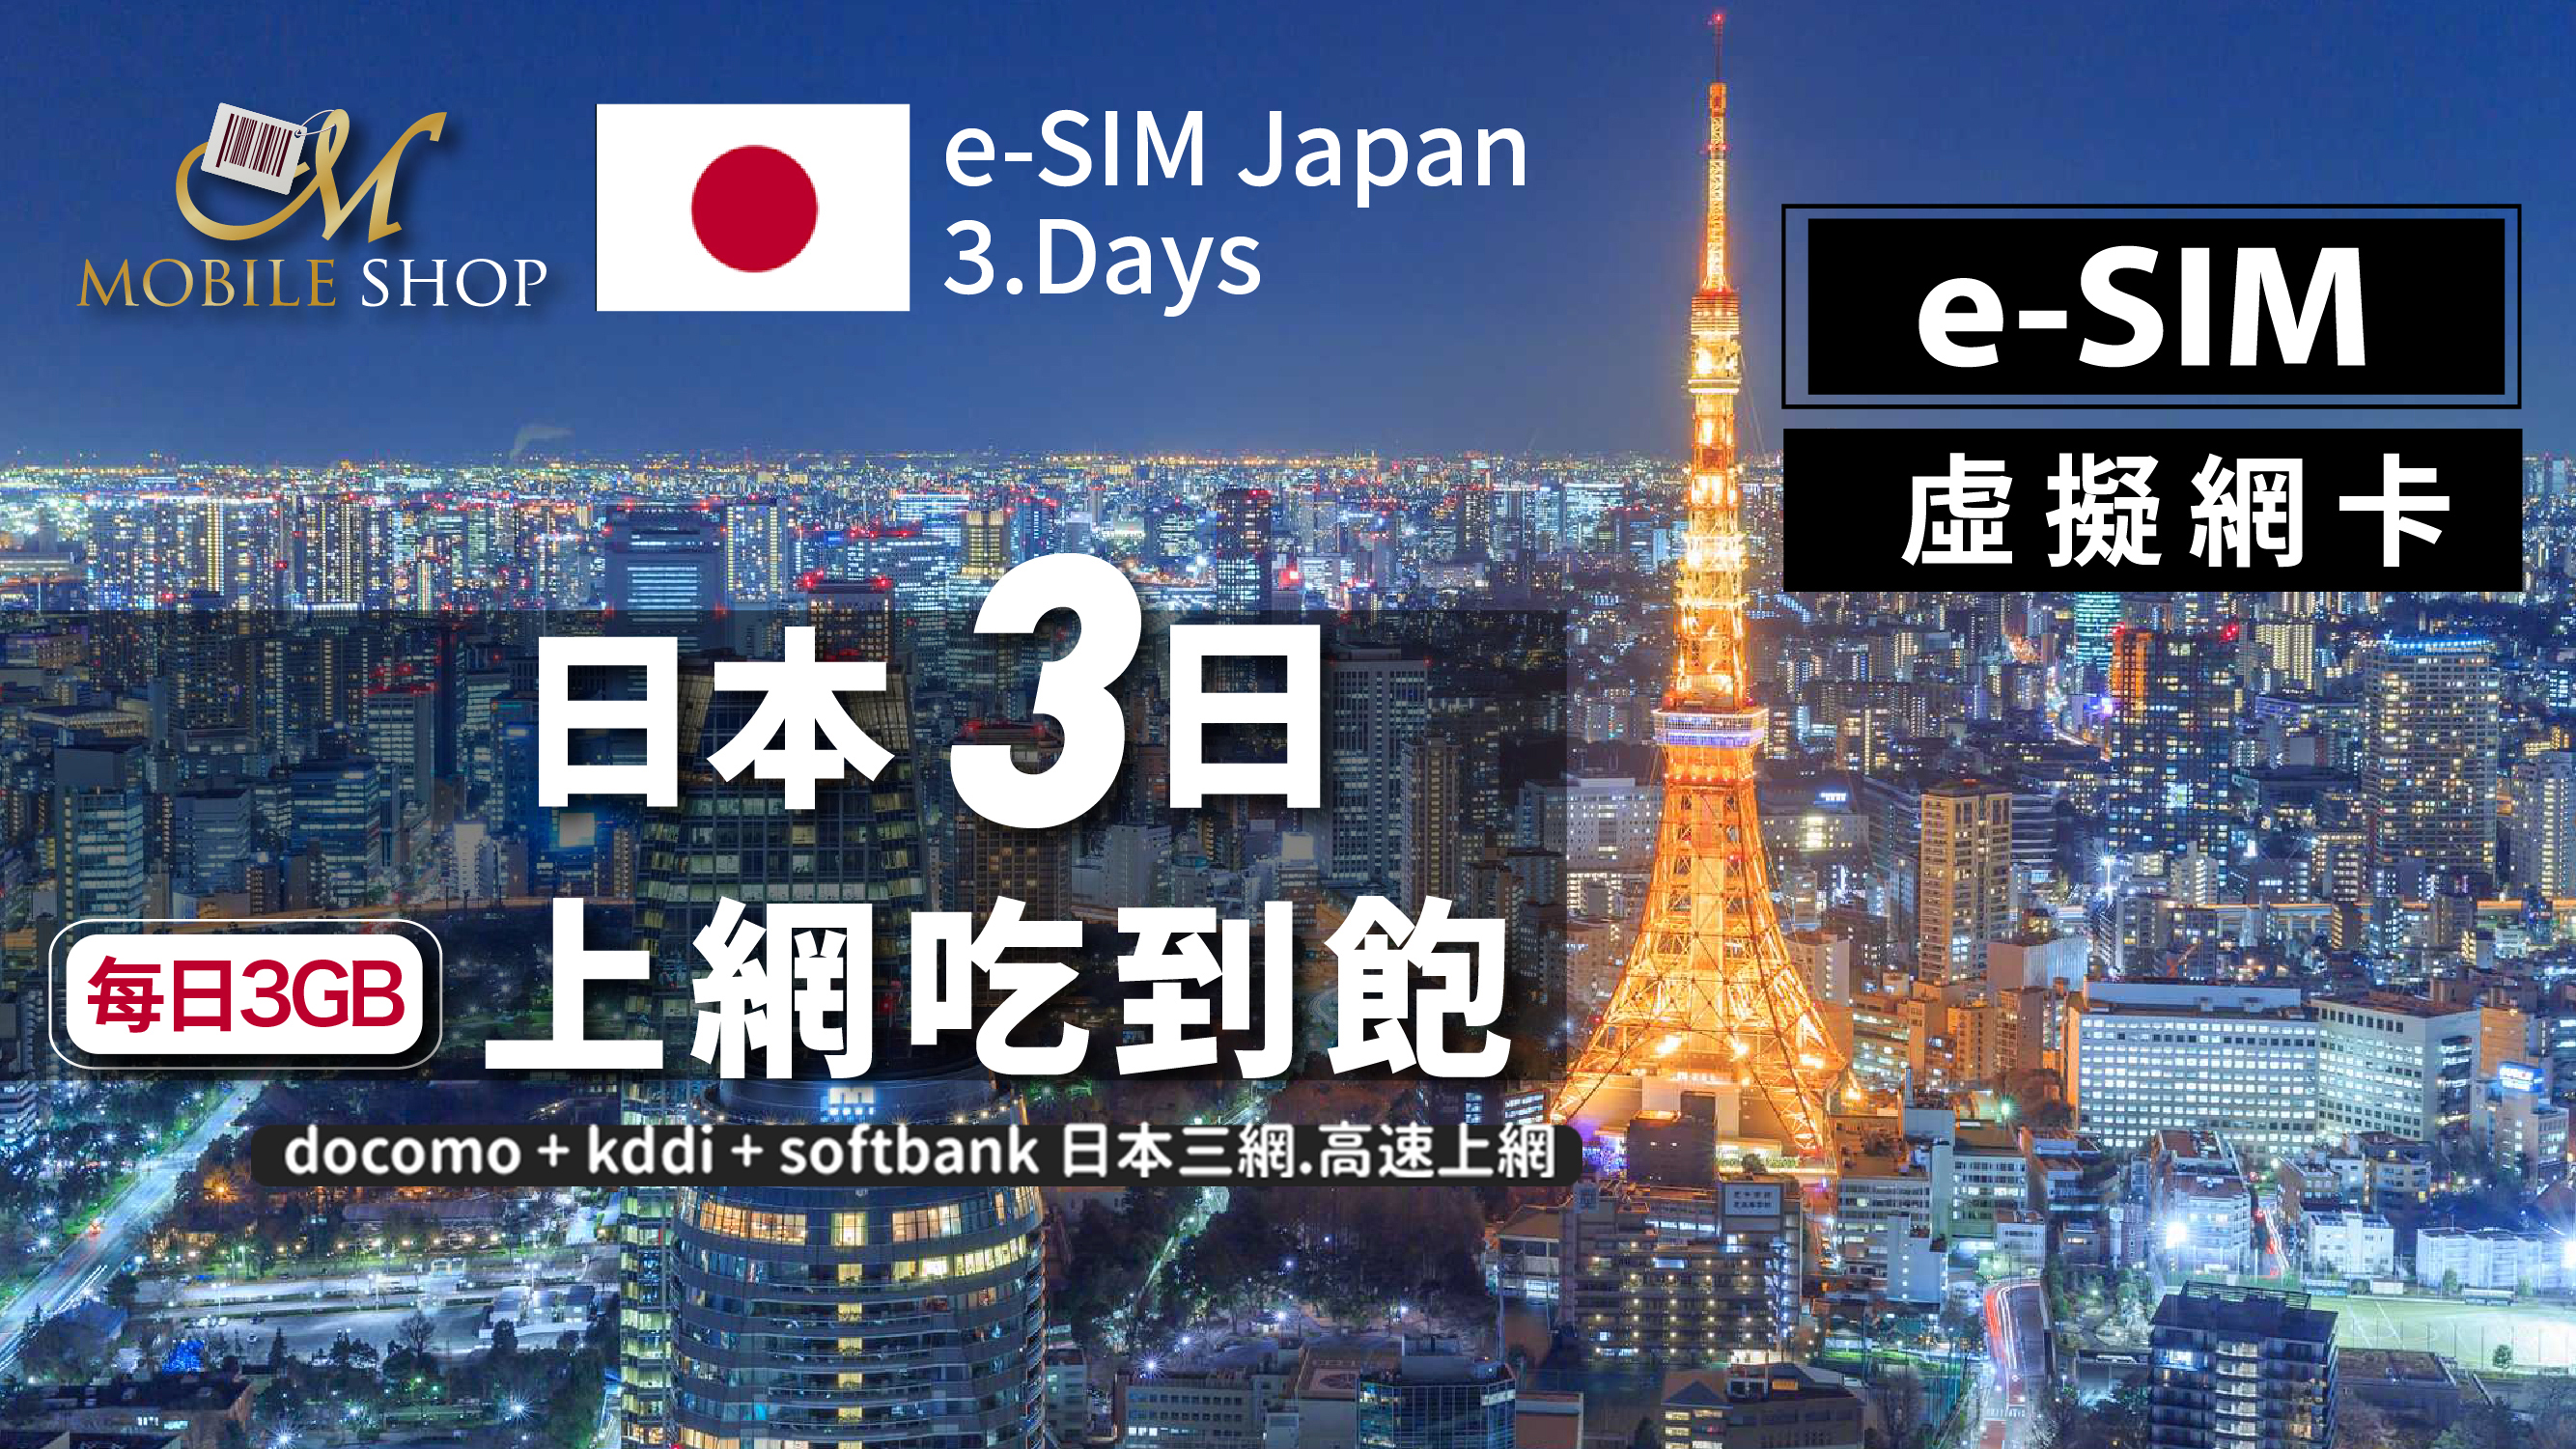 eSIM Japan 3days/3GB unlimited data